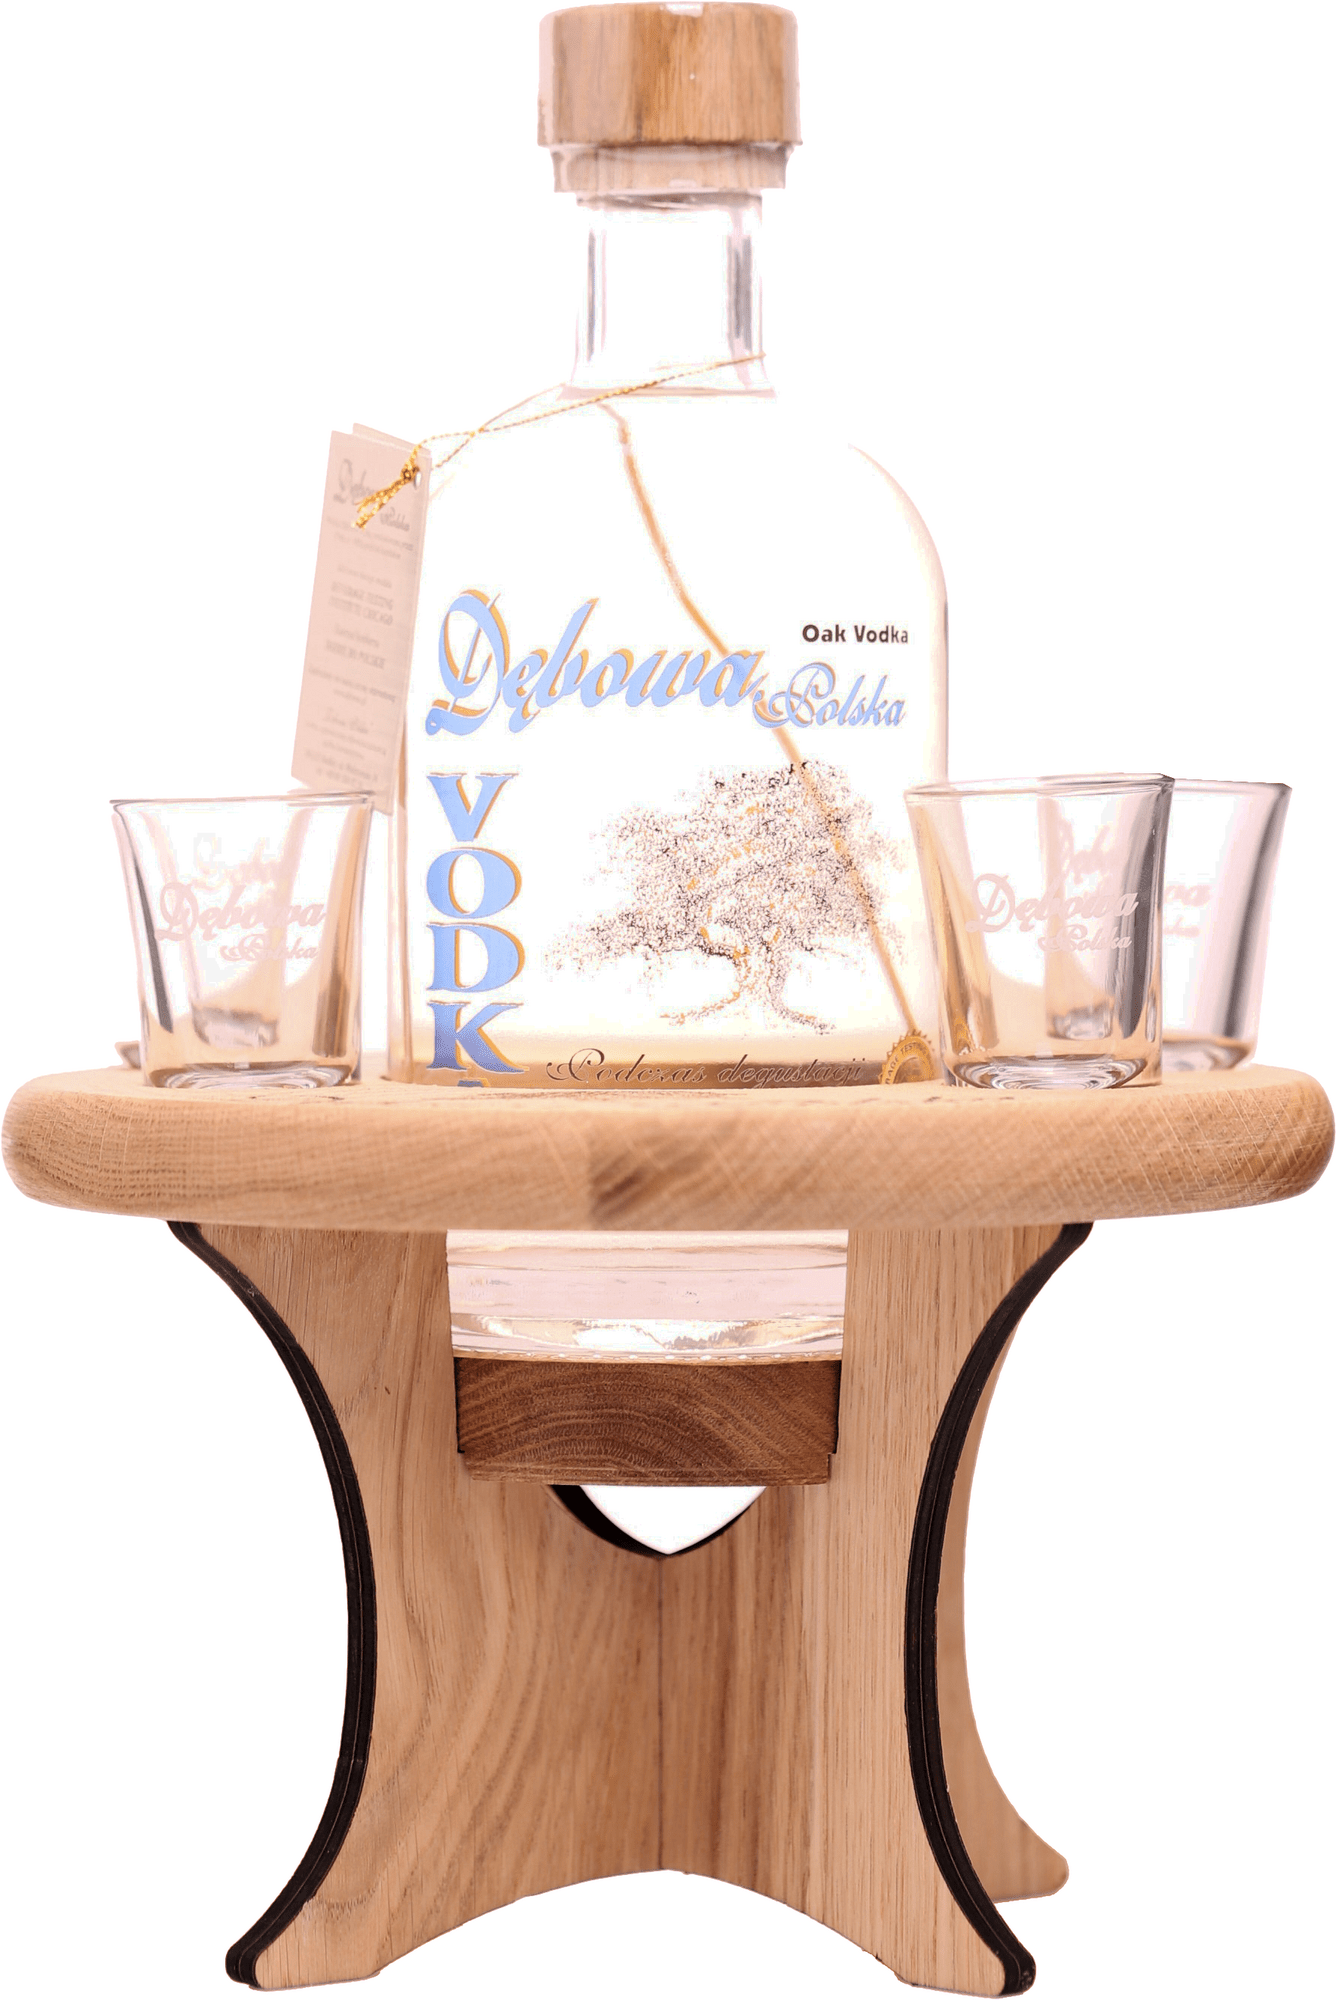 Debowa Oak Vodka Dubový stolček + 4 poháre 40% 0,7l (darčekové balenie 4 poháre)